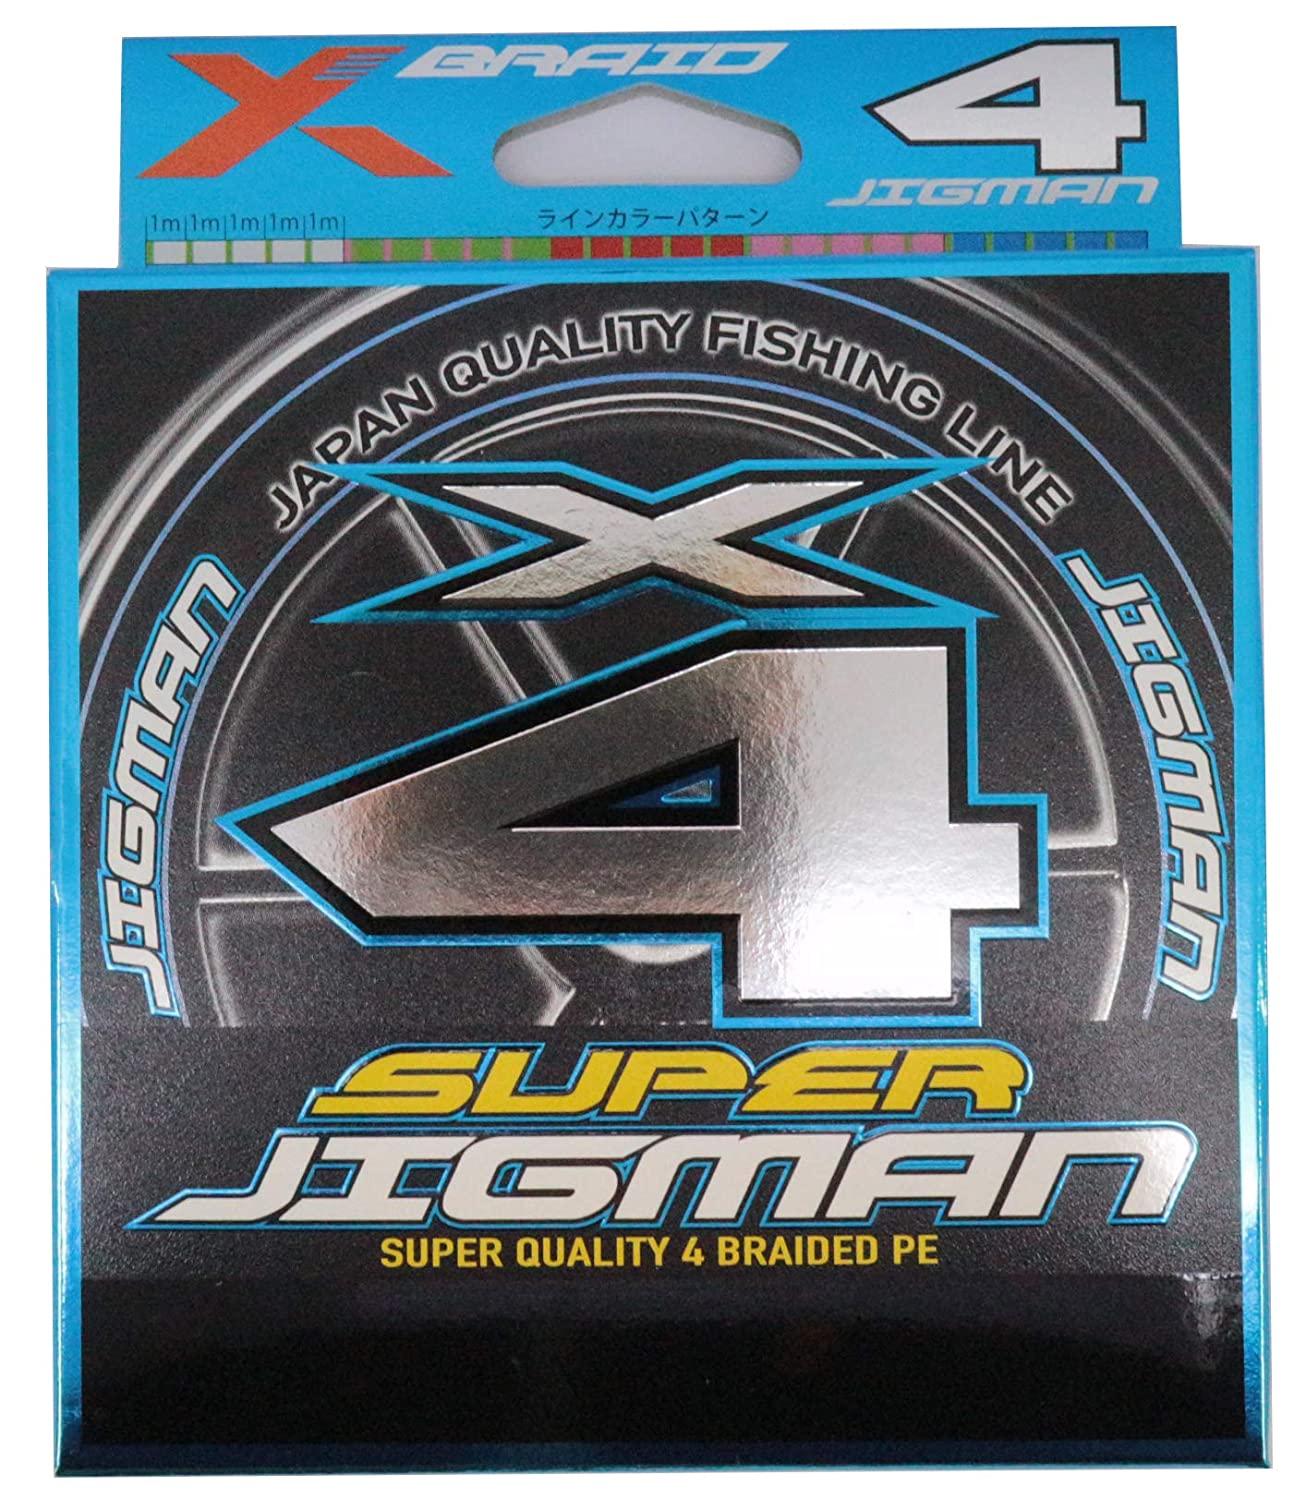  X-BRAID SUPER JIGMAN X4 300m 2.5 35lb